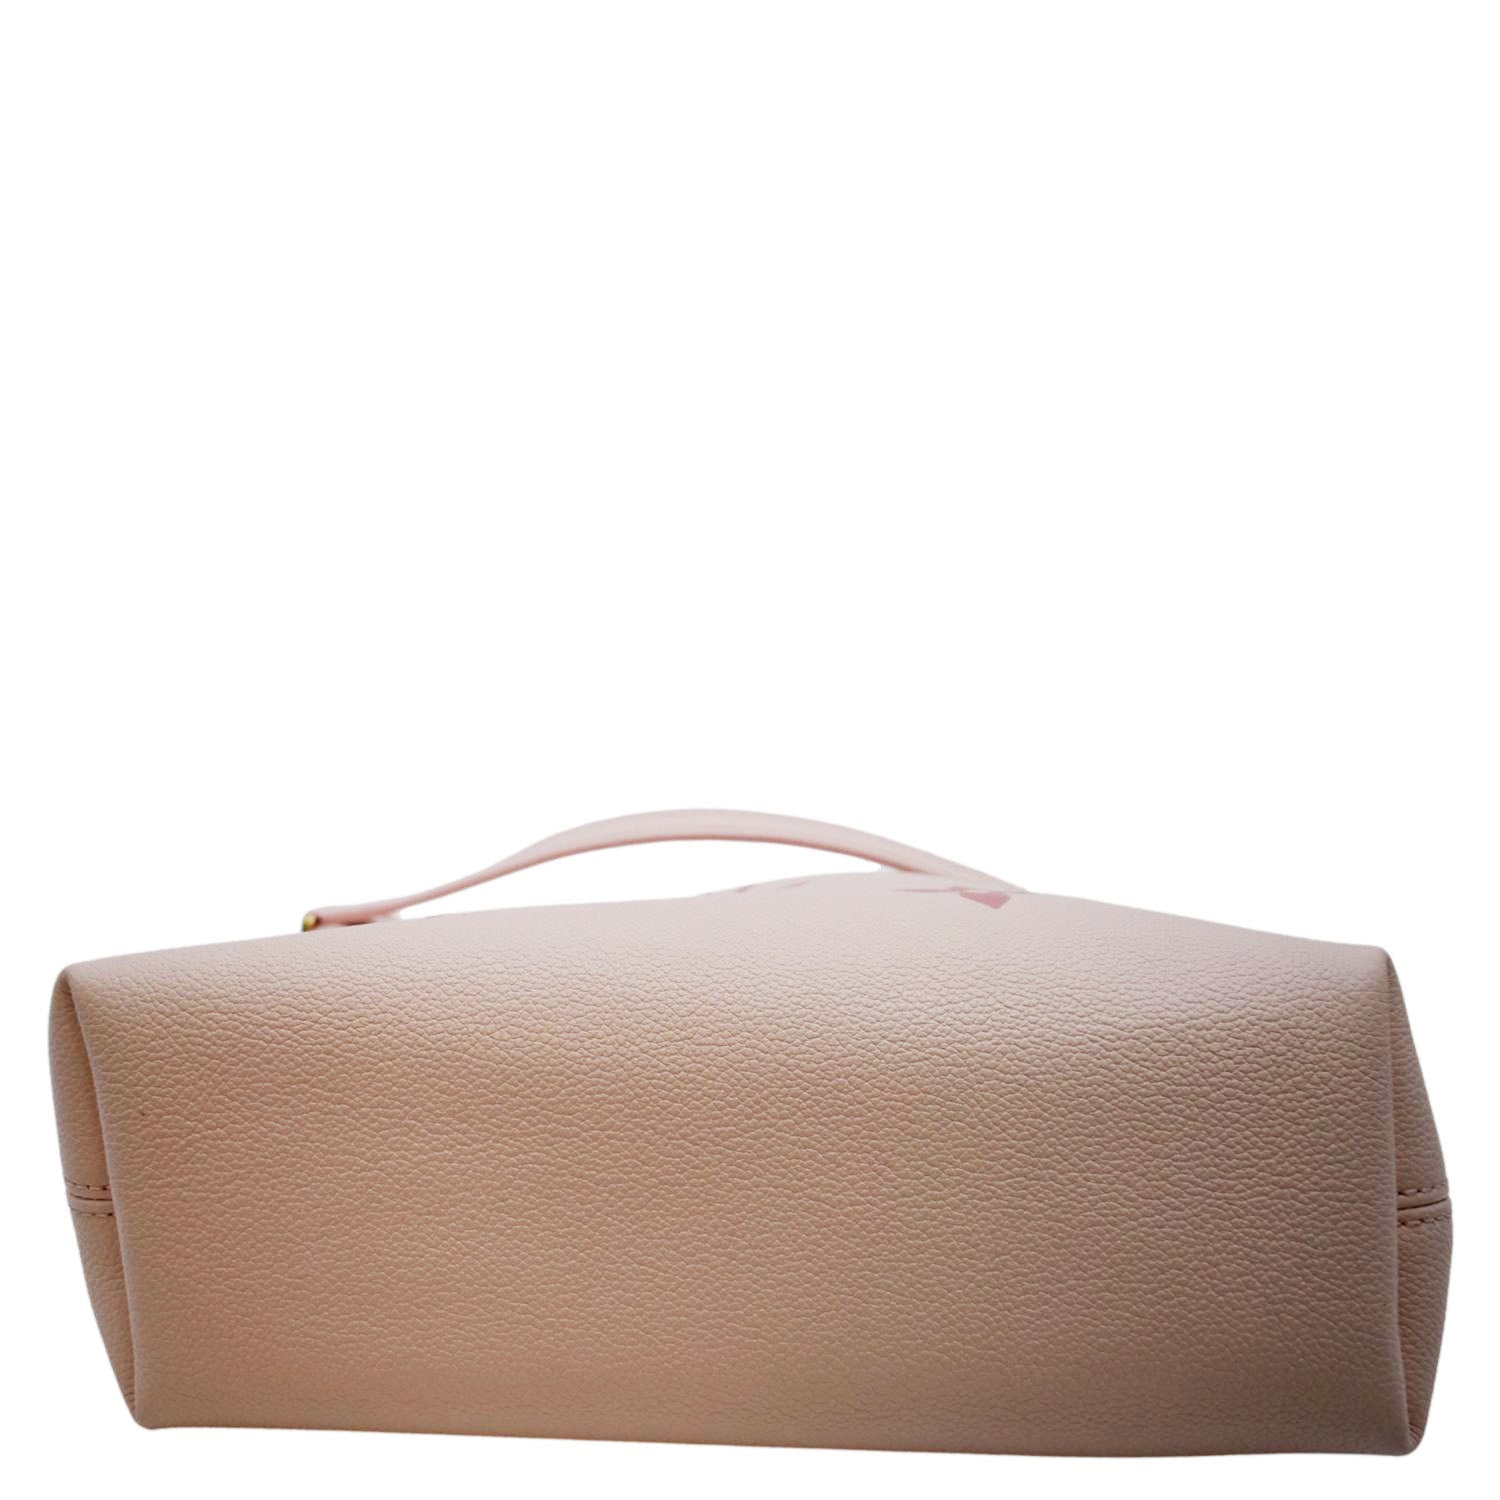 Shop Louis Vuitton MONOGRAM EMPREINTE 2021 SS Exclusive online pre-launch - favourite  bag (M45813) by nordsud